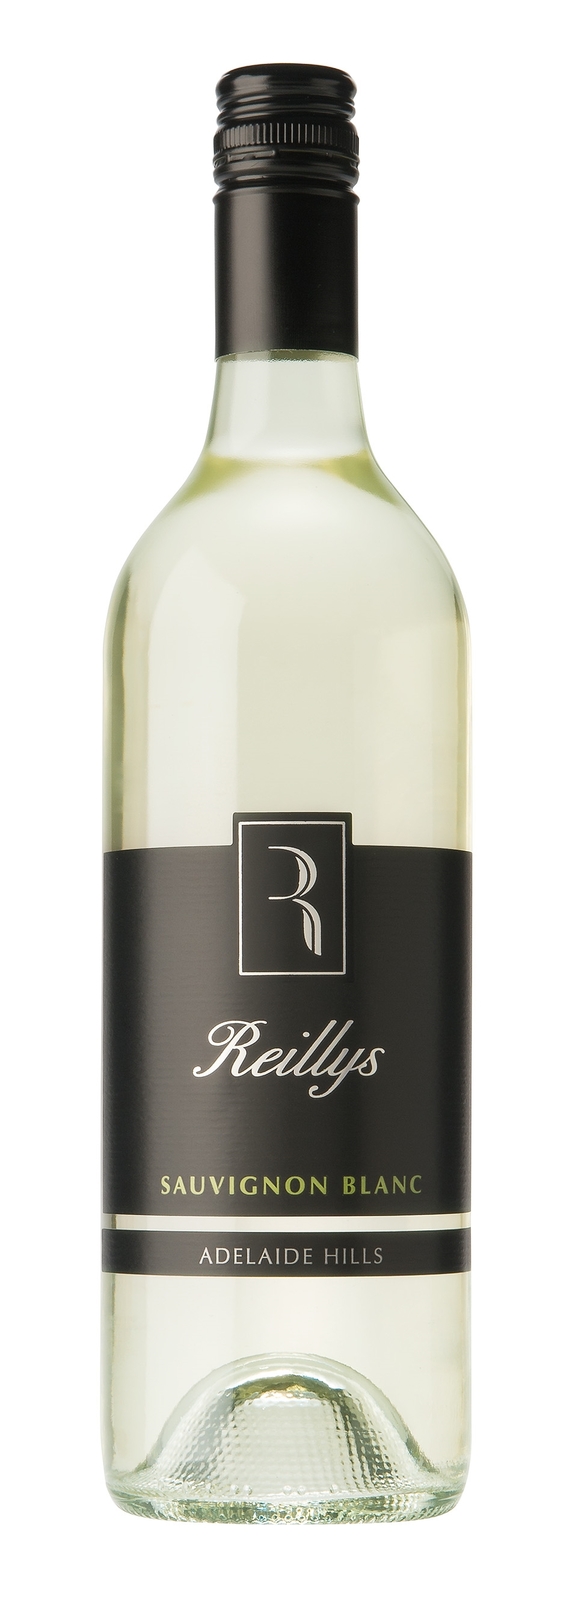 Reillys Sauvignon Blanc 2019